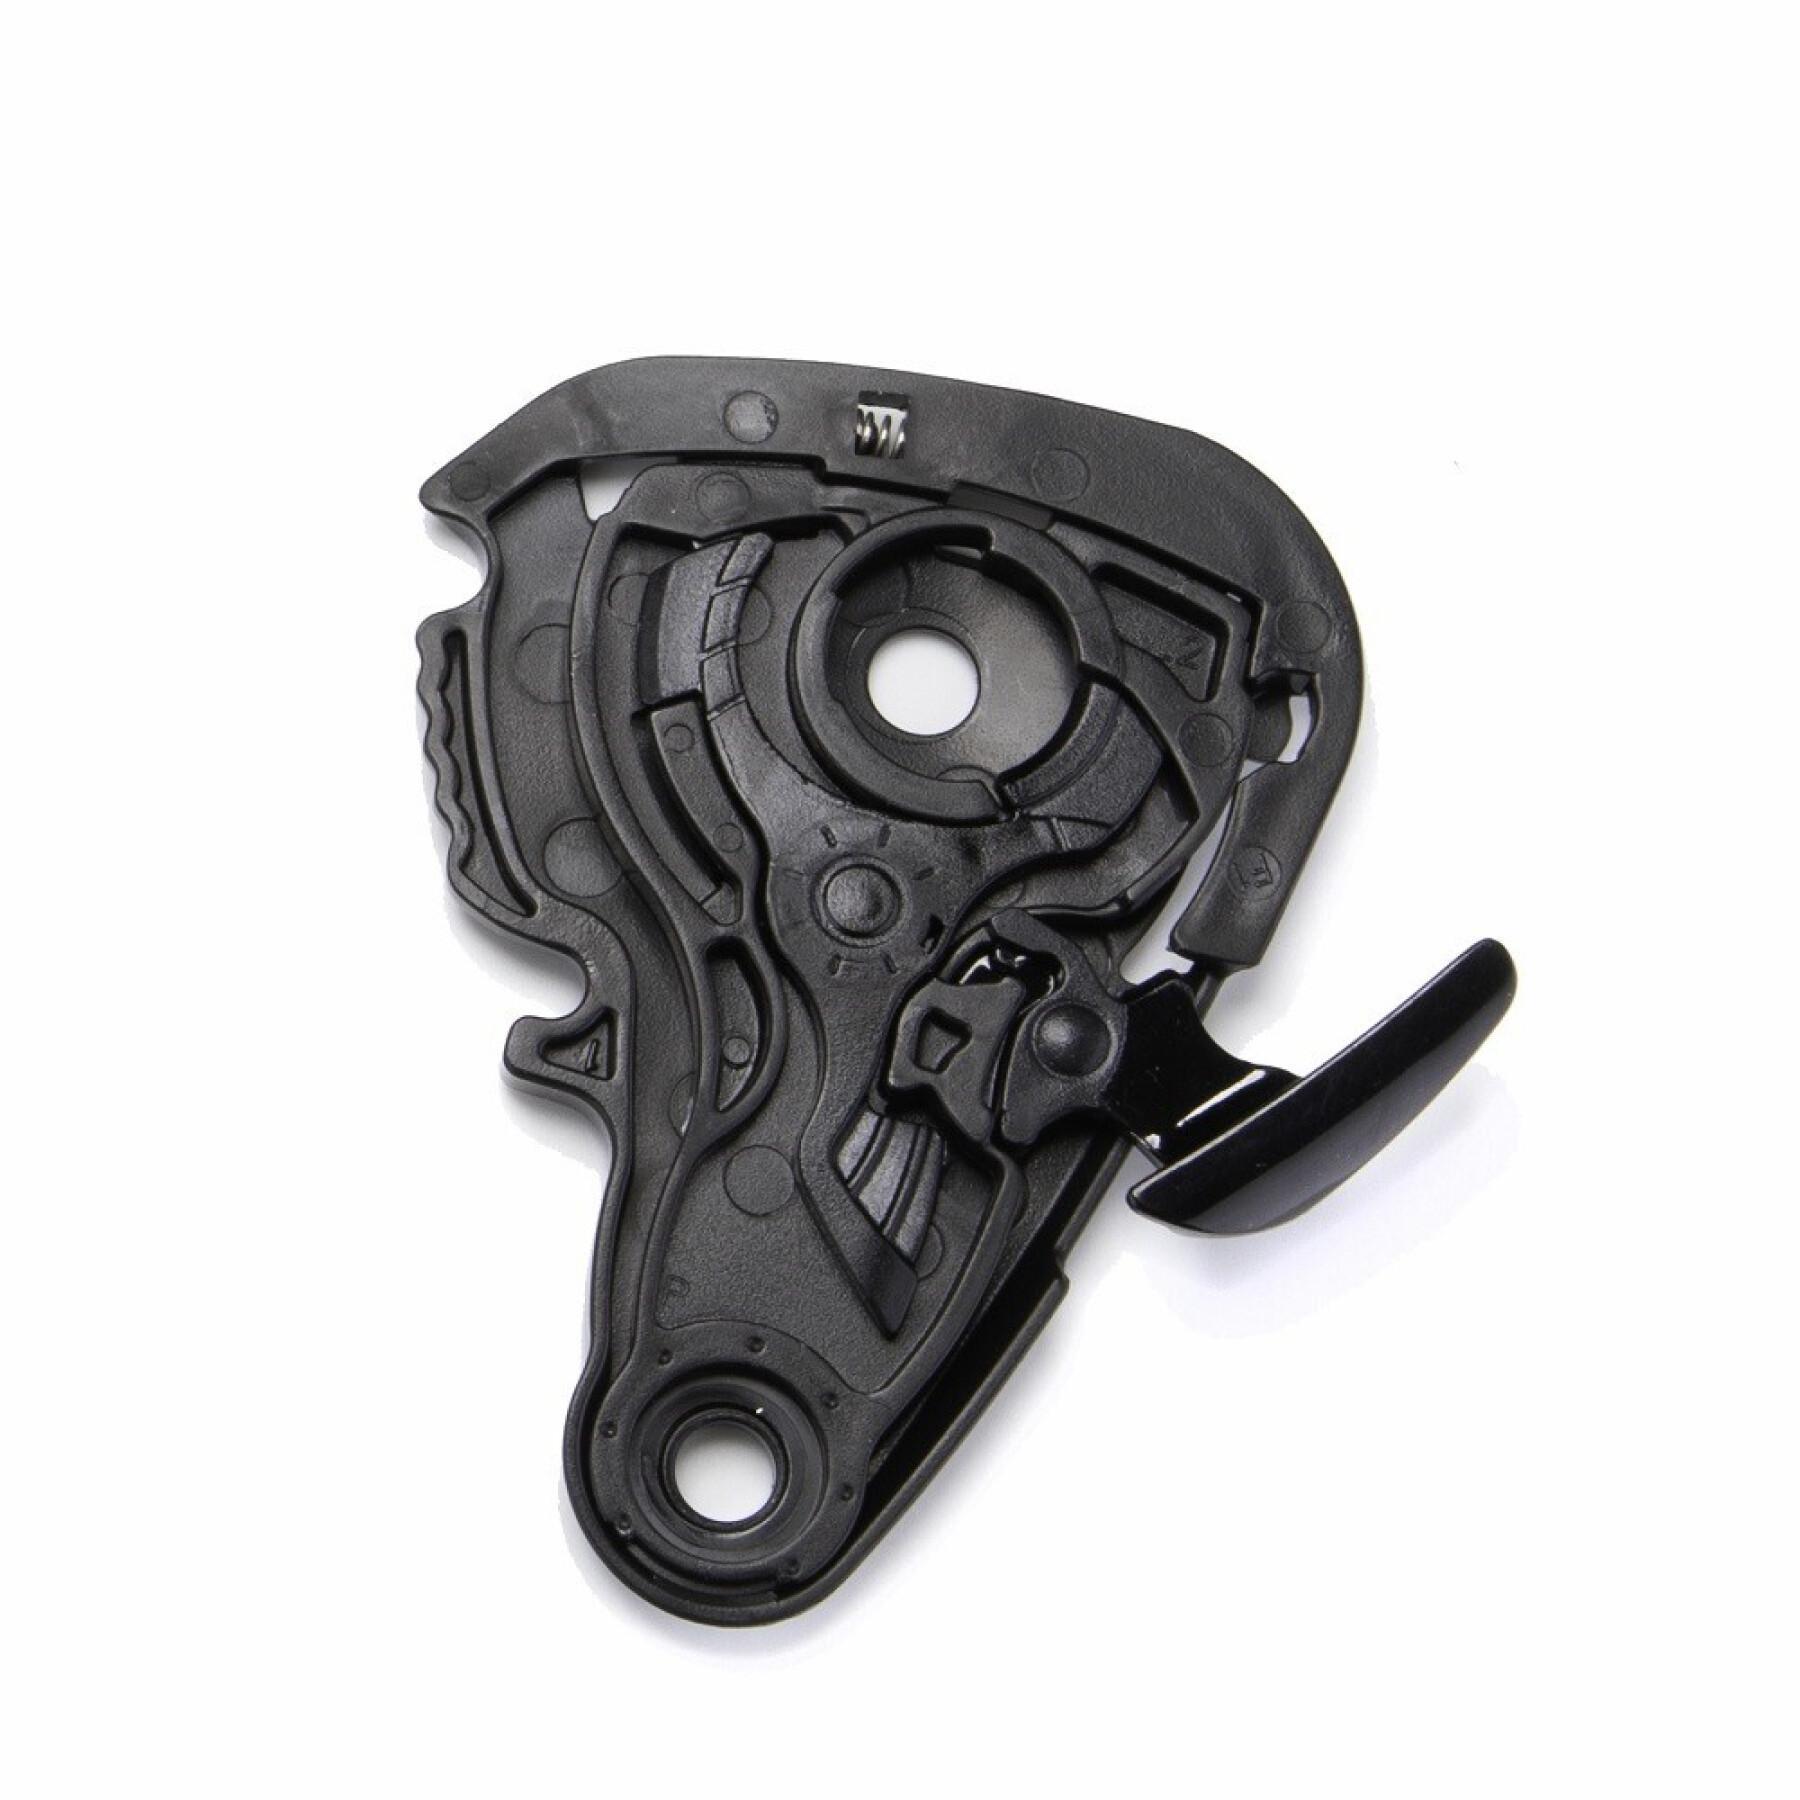 Kit zur Befestigung des Motorradvisiers Scorpion Exo-491 / 510 / 1200 Shield